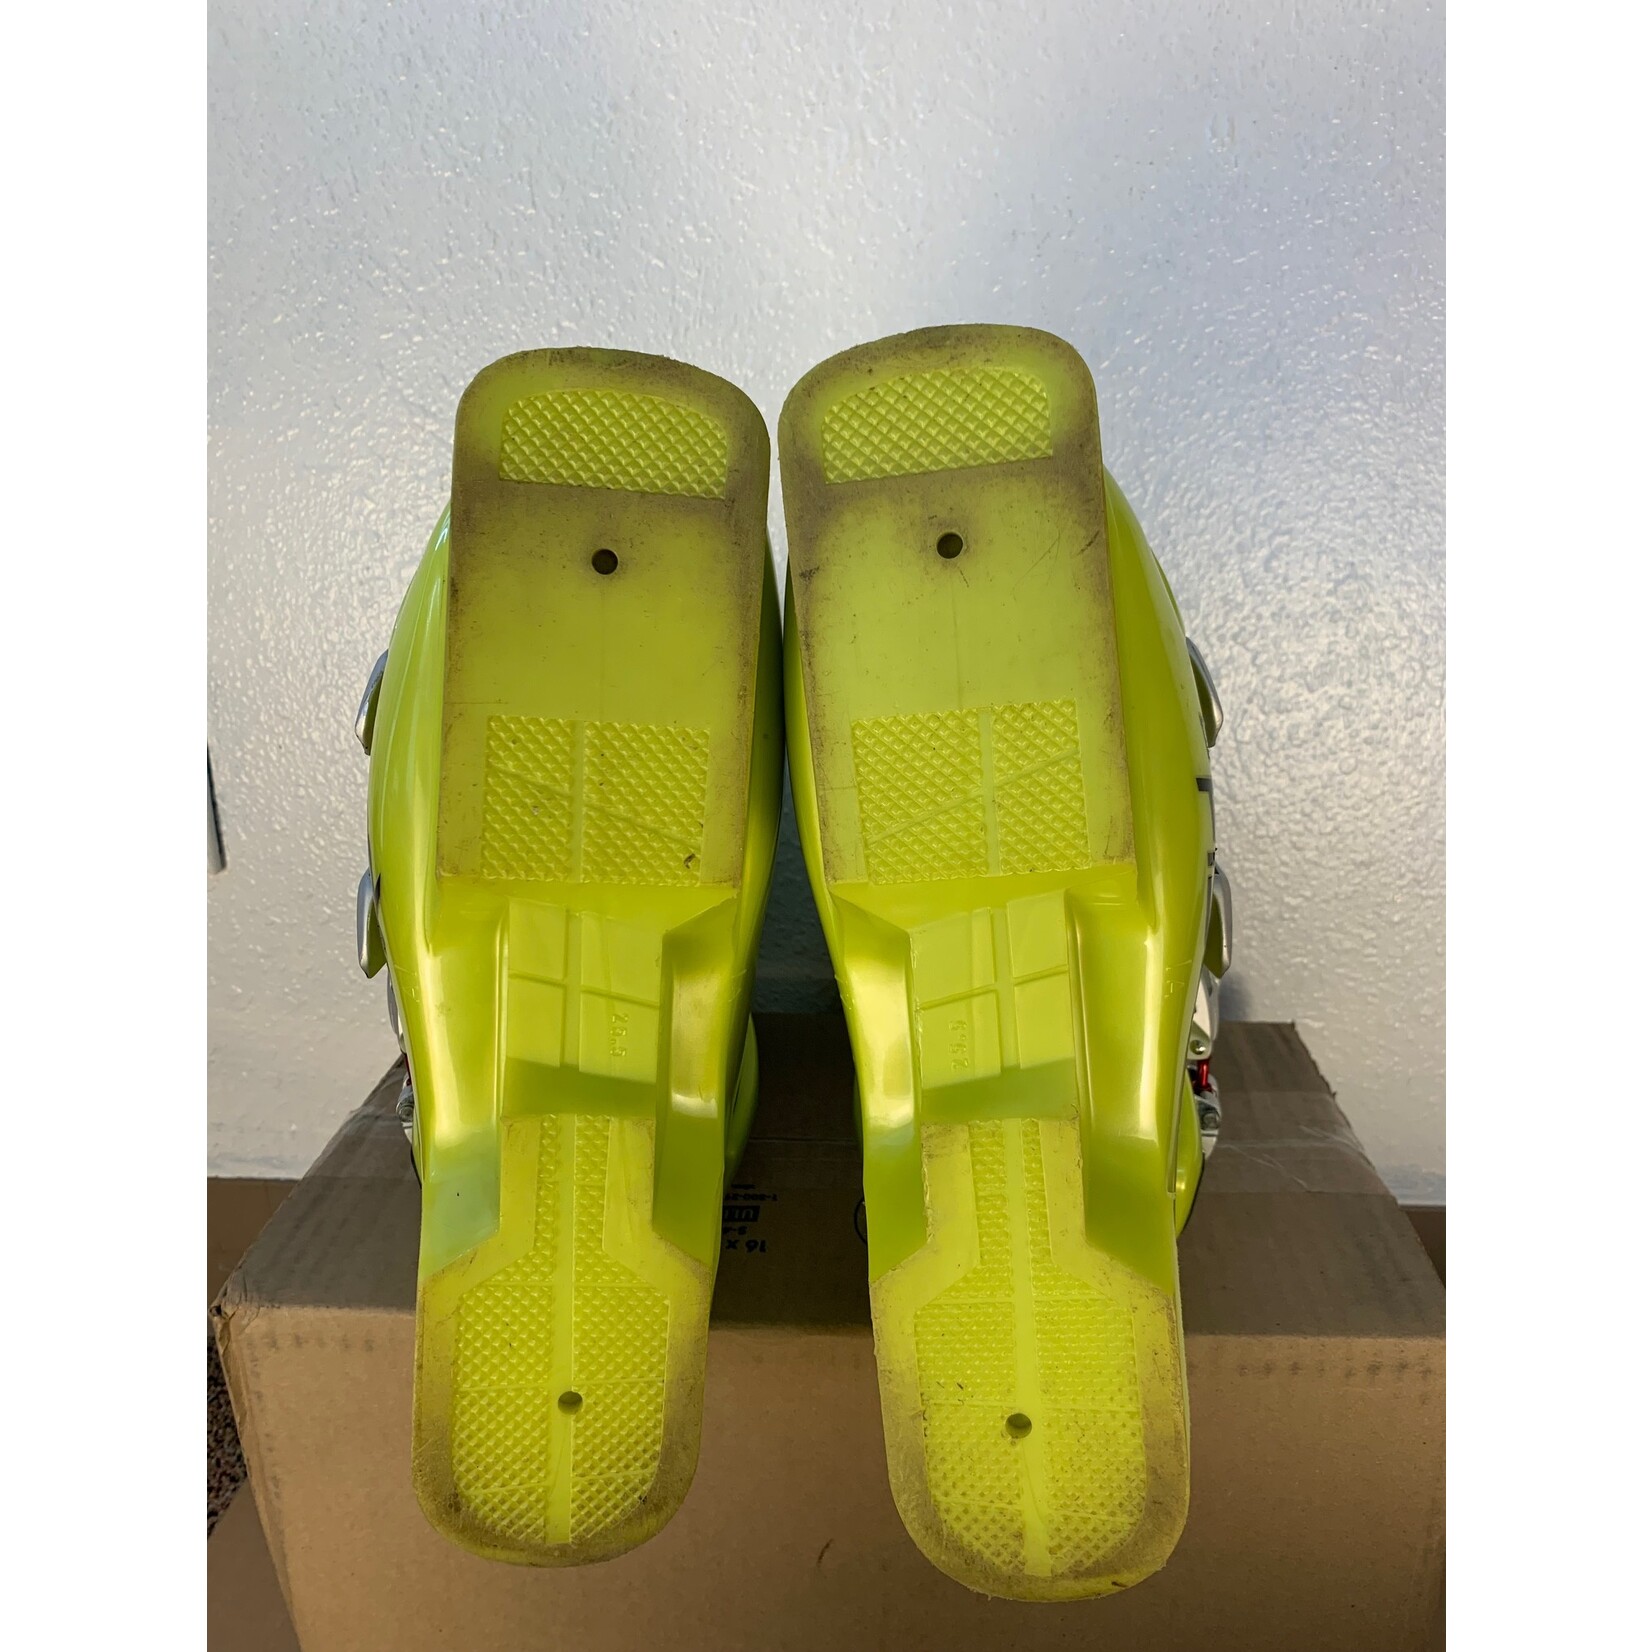 Fischer Fischer RC4 Ski Boots (Size 25.5)